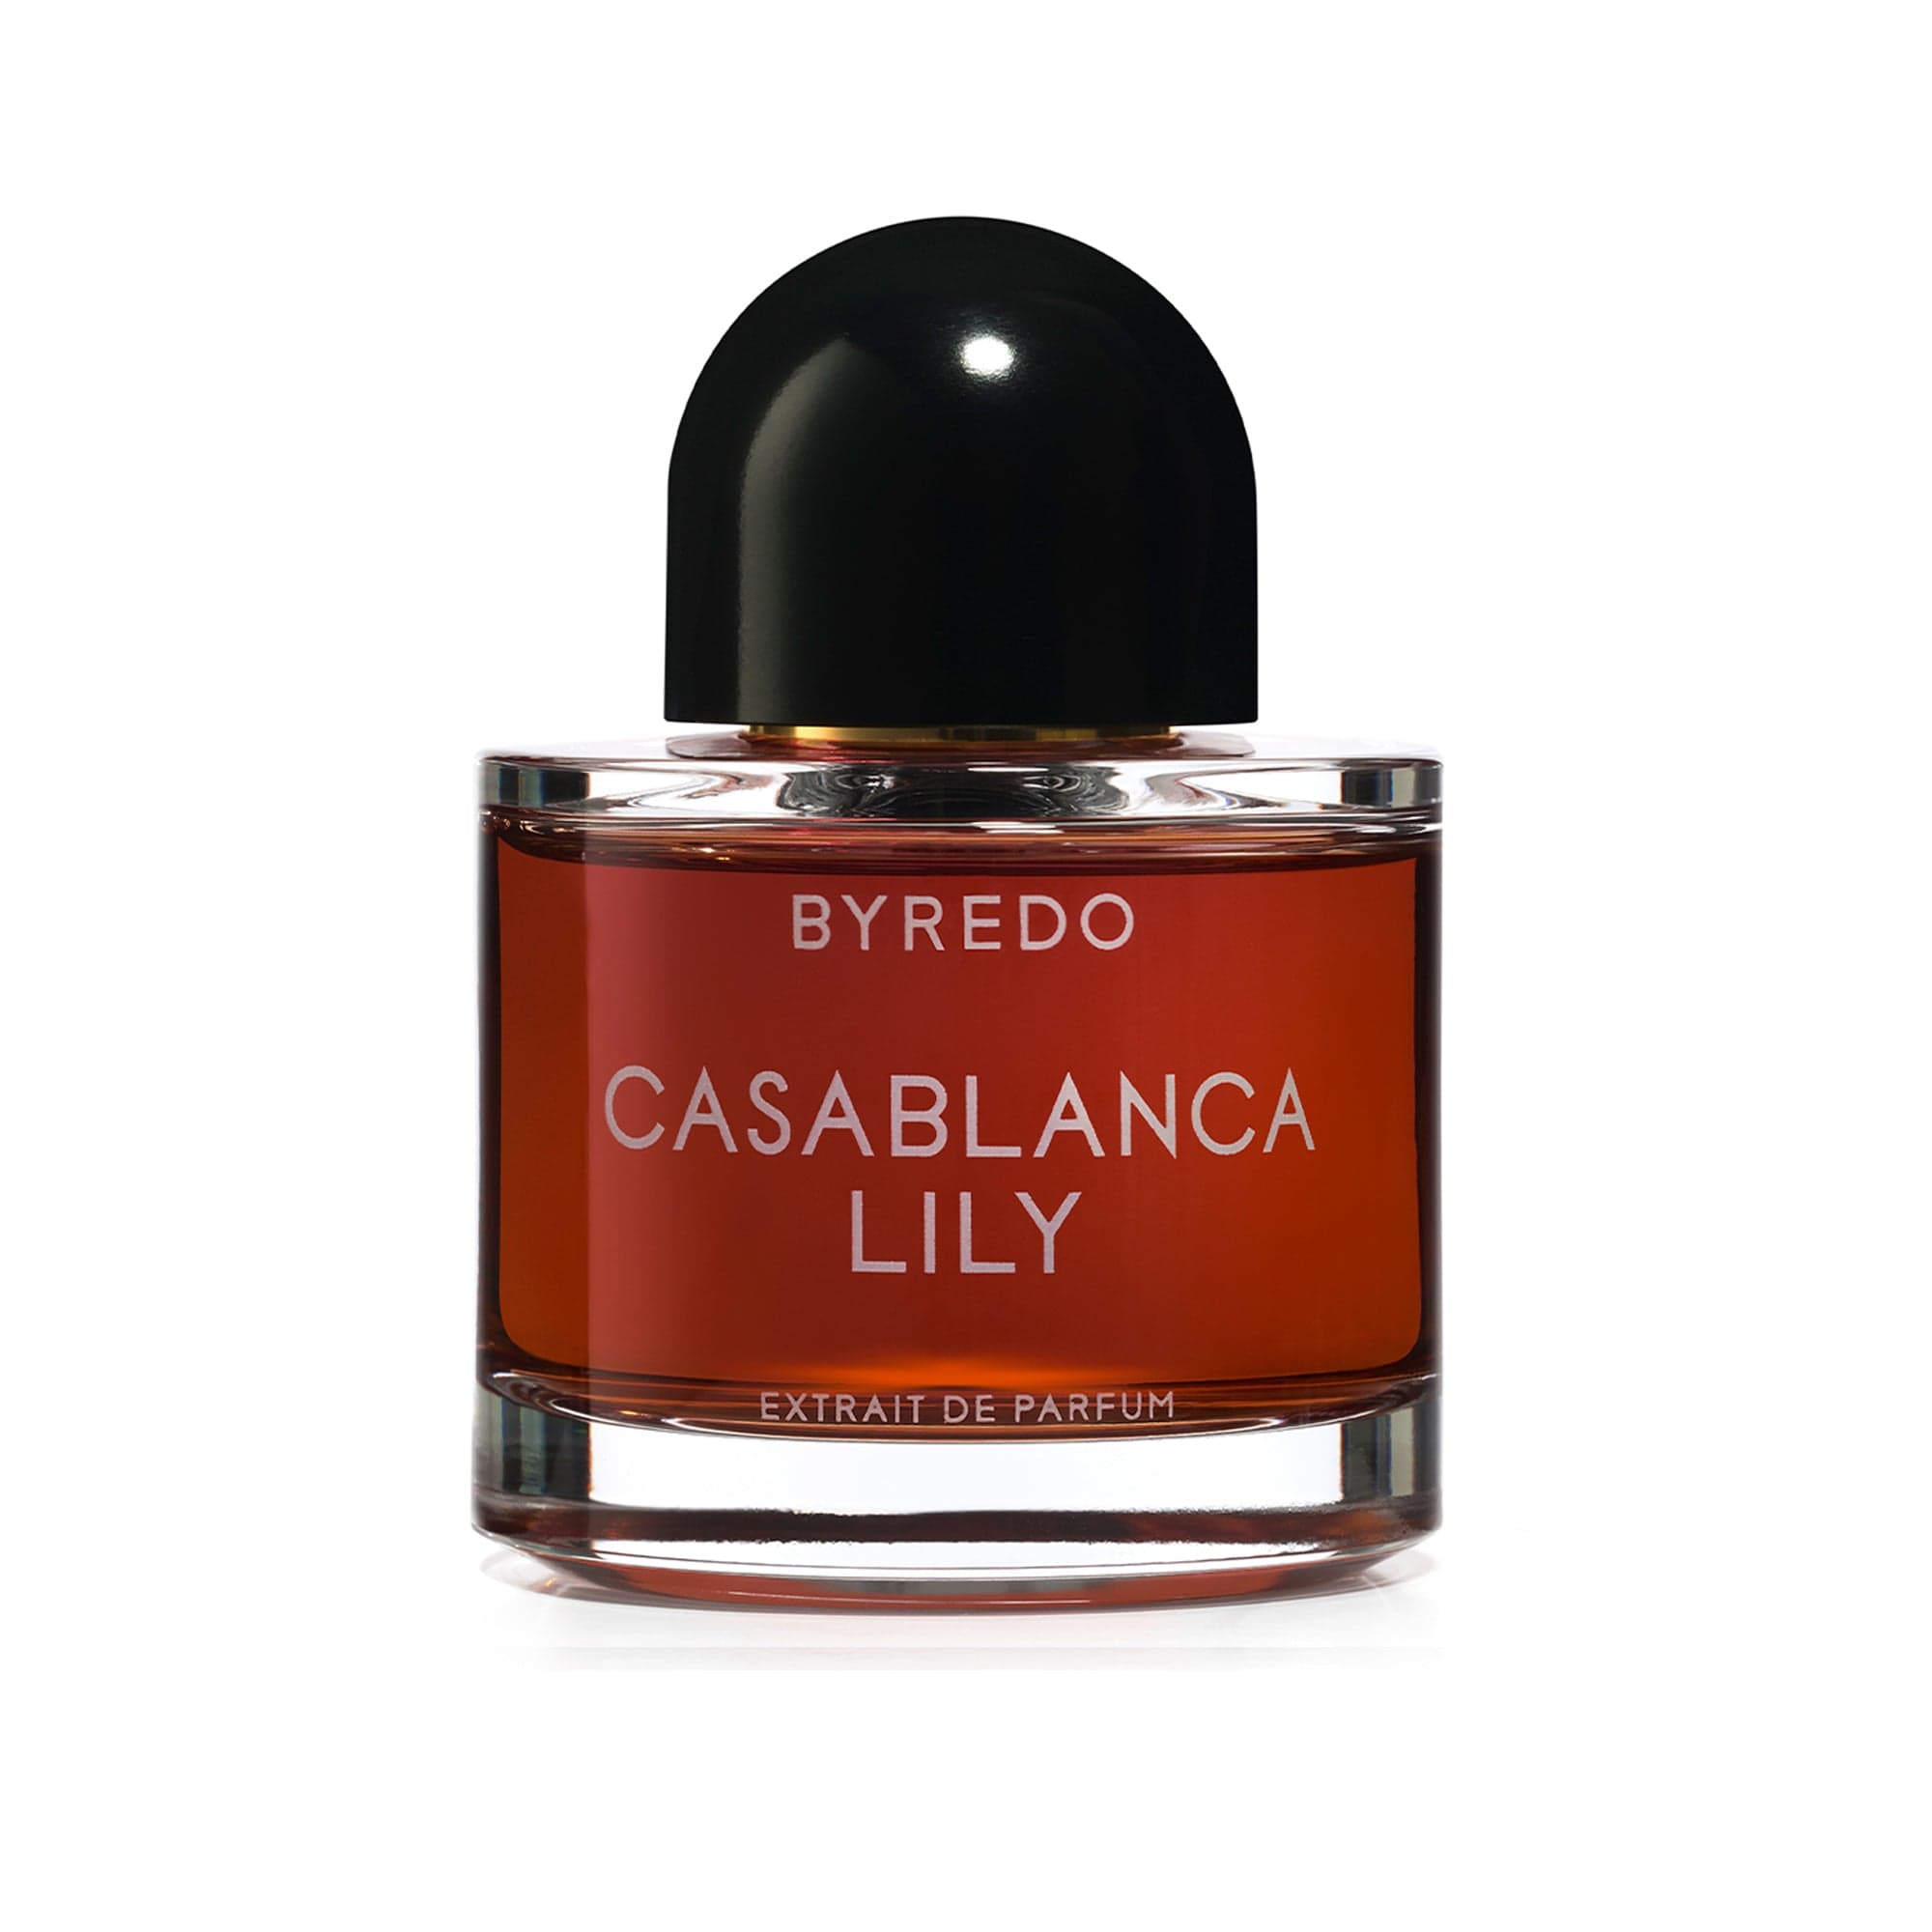 Casablanca Lily BYREDO Extracto de Perfume